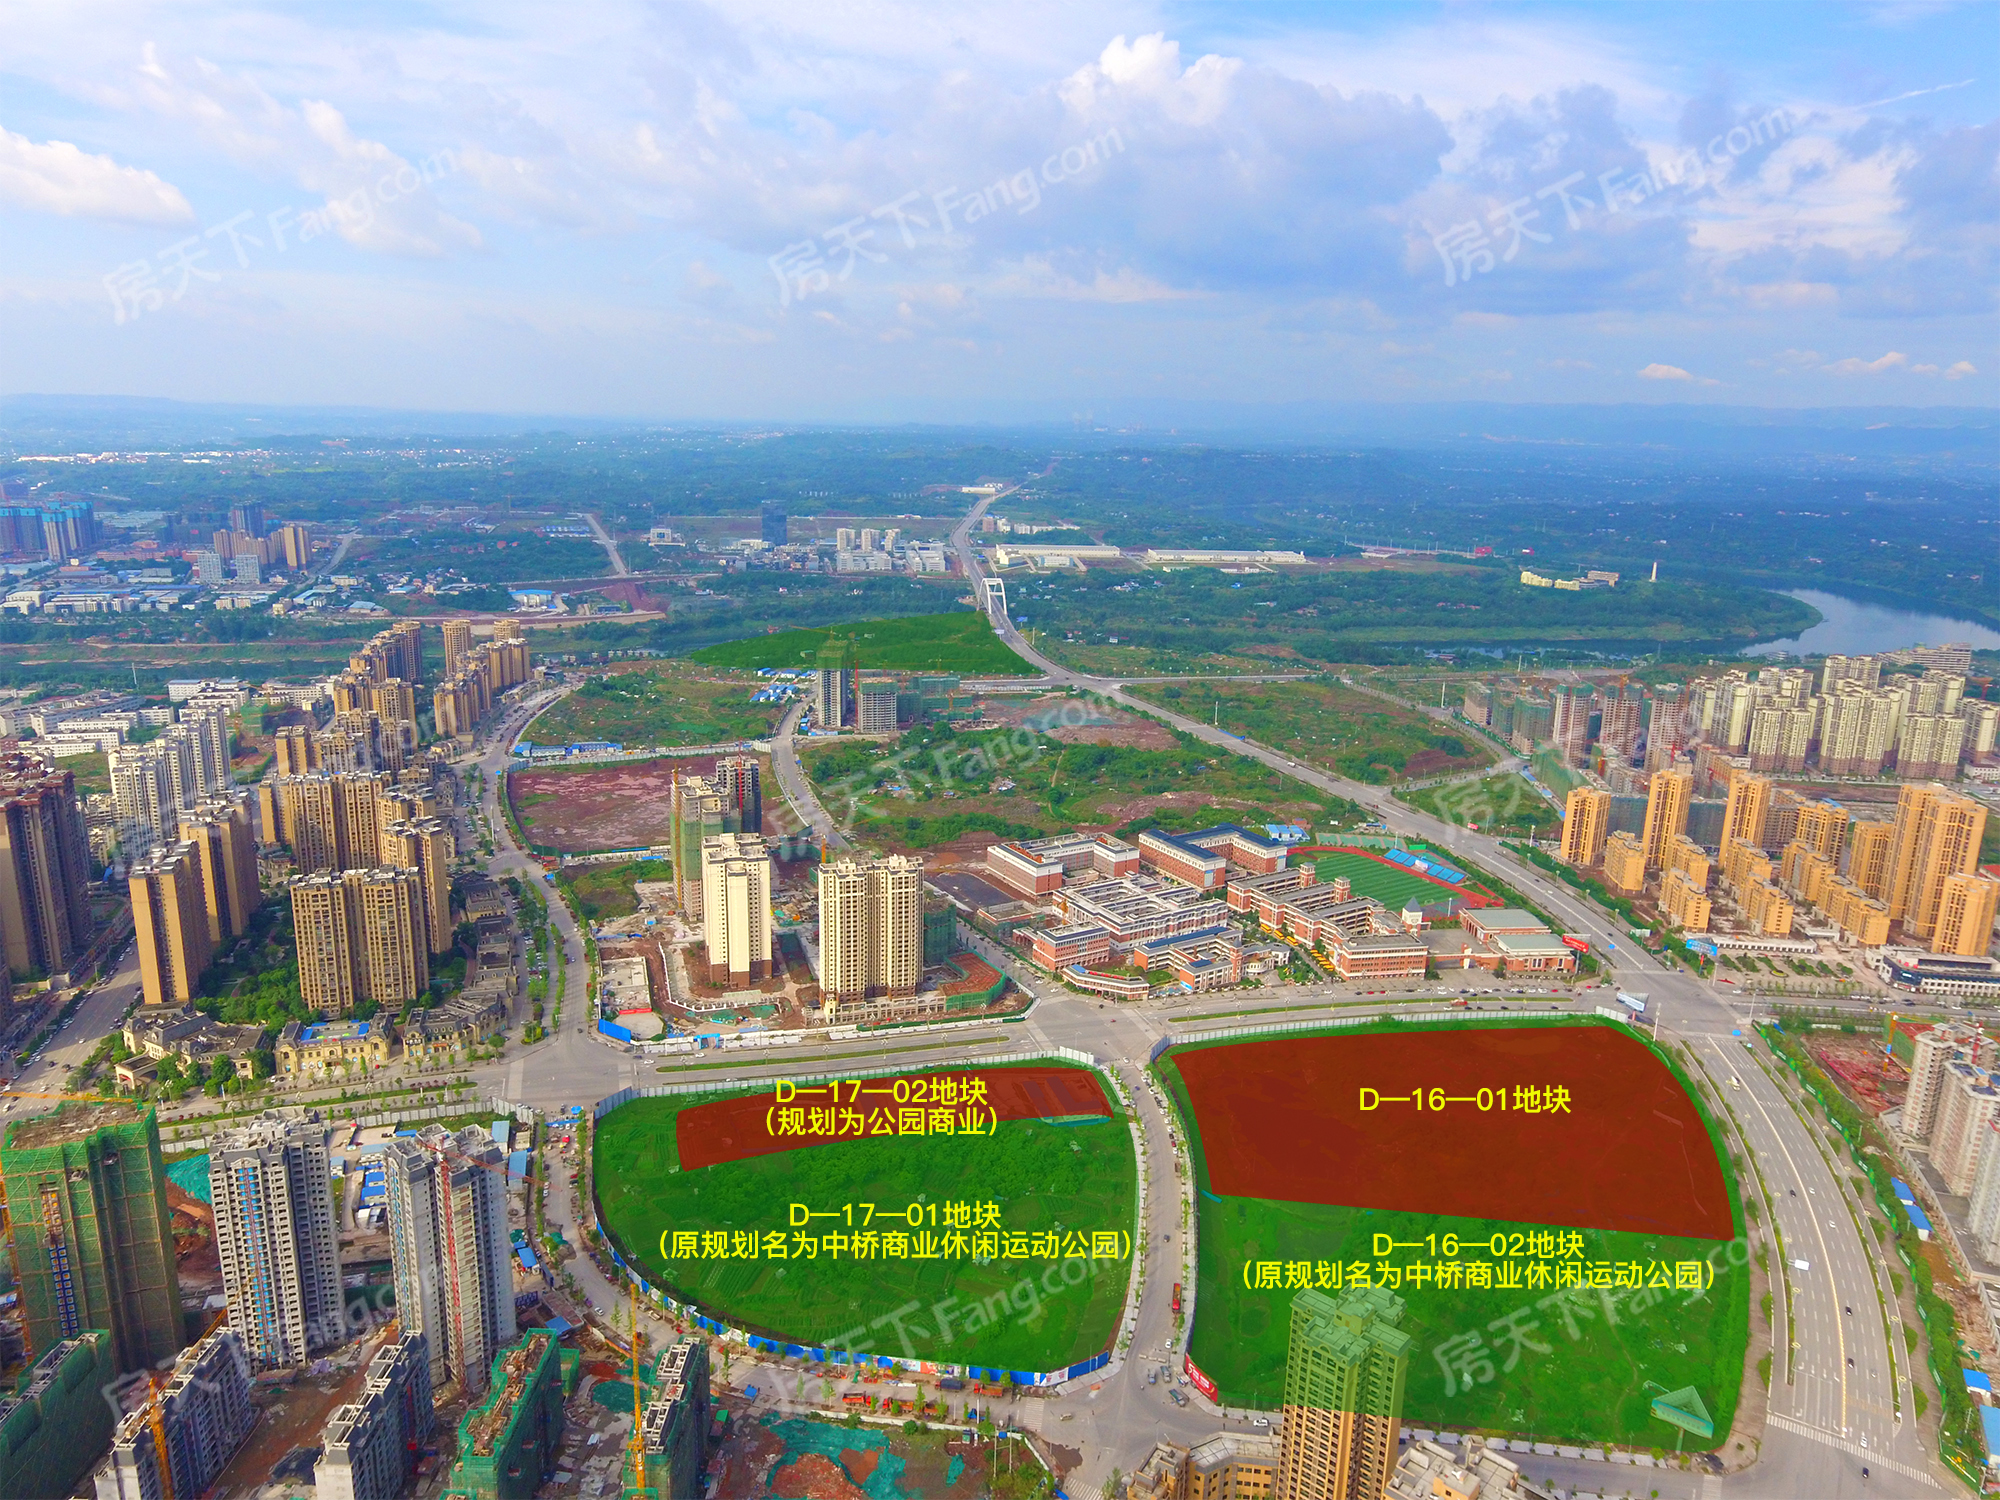 喜大普奔!广安东南片区将新增三个市政公园 总规划面积1170亩